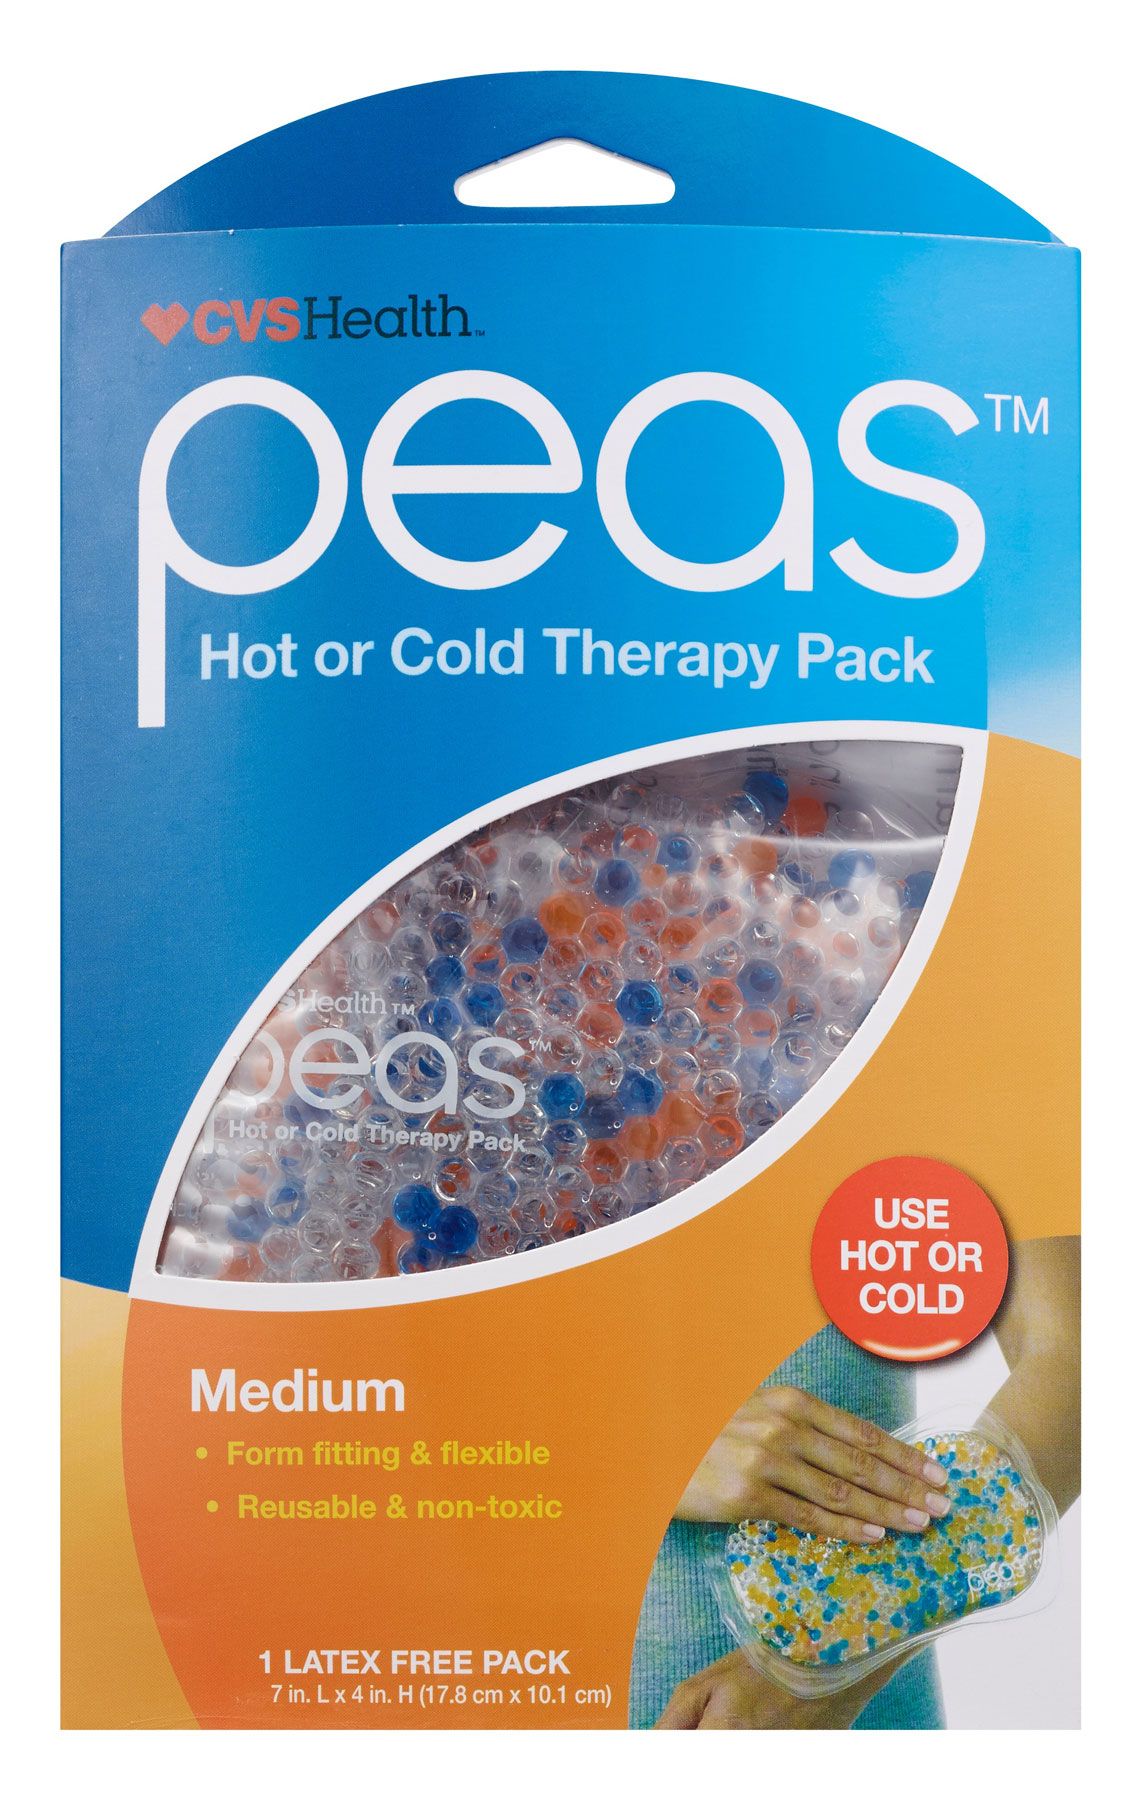 هدايا للمرضى أو المصابين وأفكار هدايا الحجر الصحي - حزمة العلاج الساخن أو البارد من CVS Health Peas